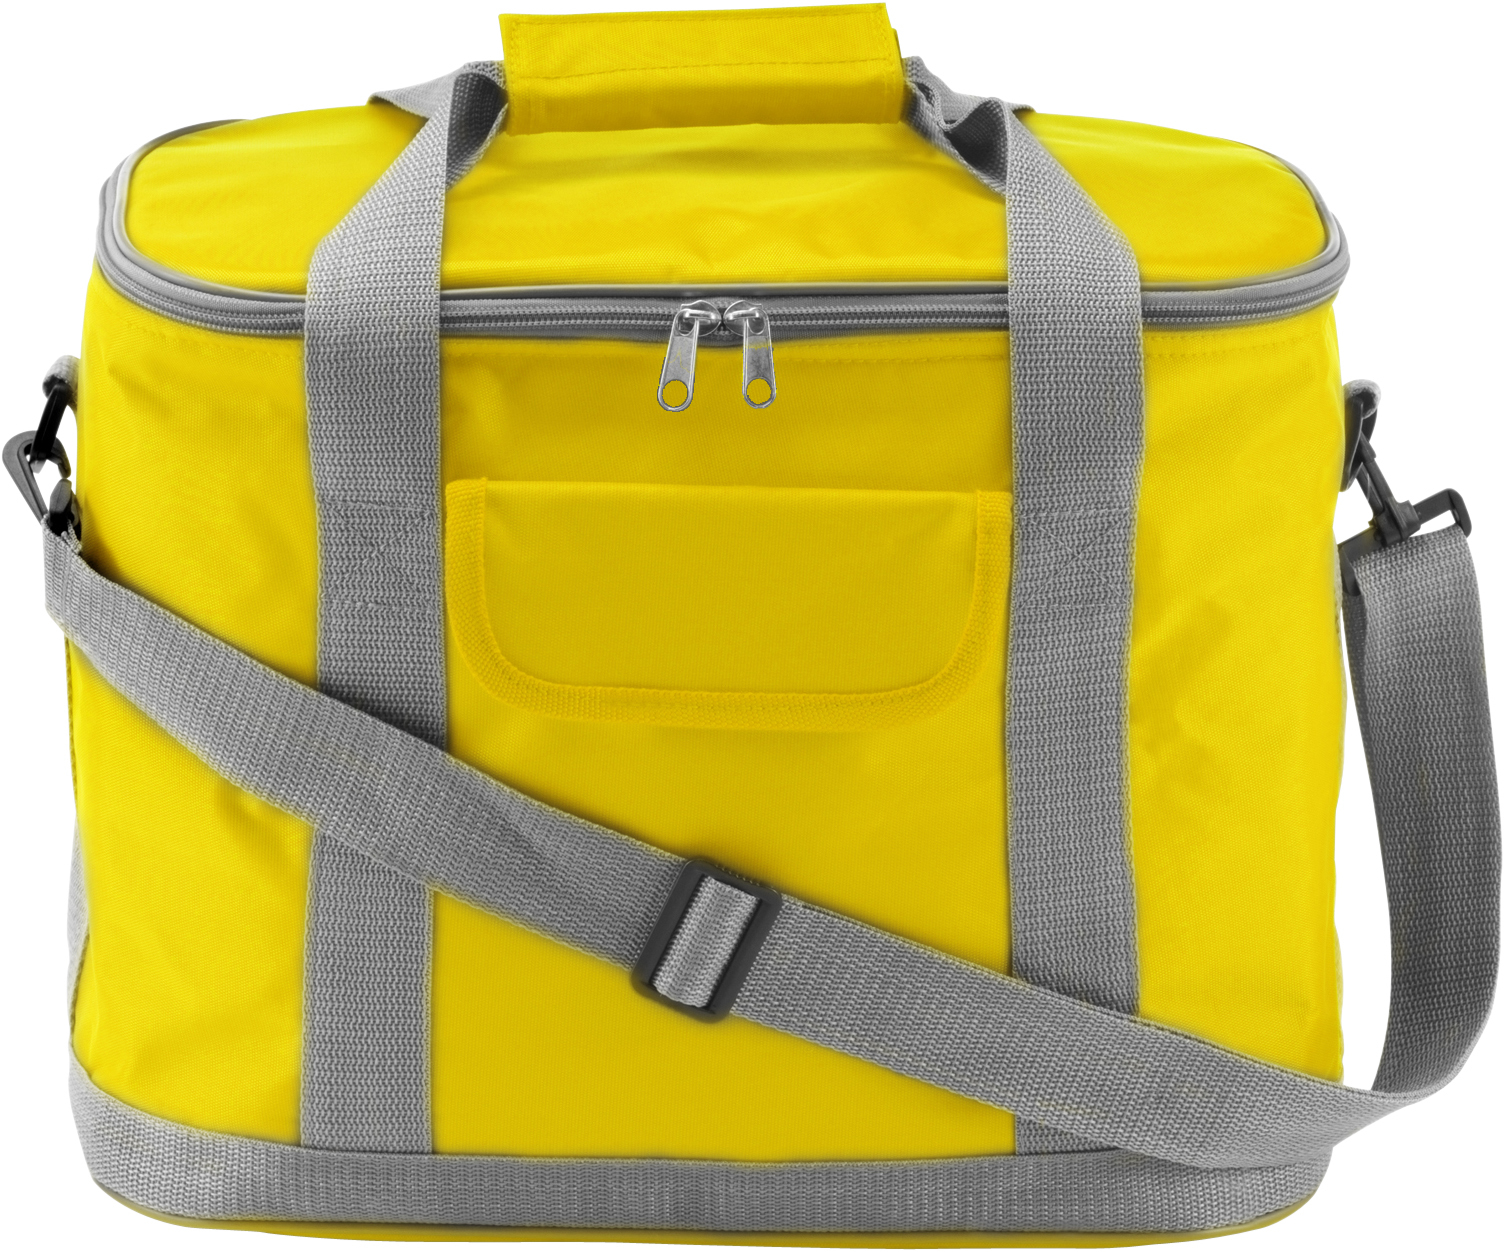 Picnic Cooler Bag  in yellow